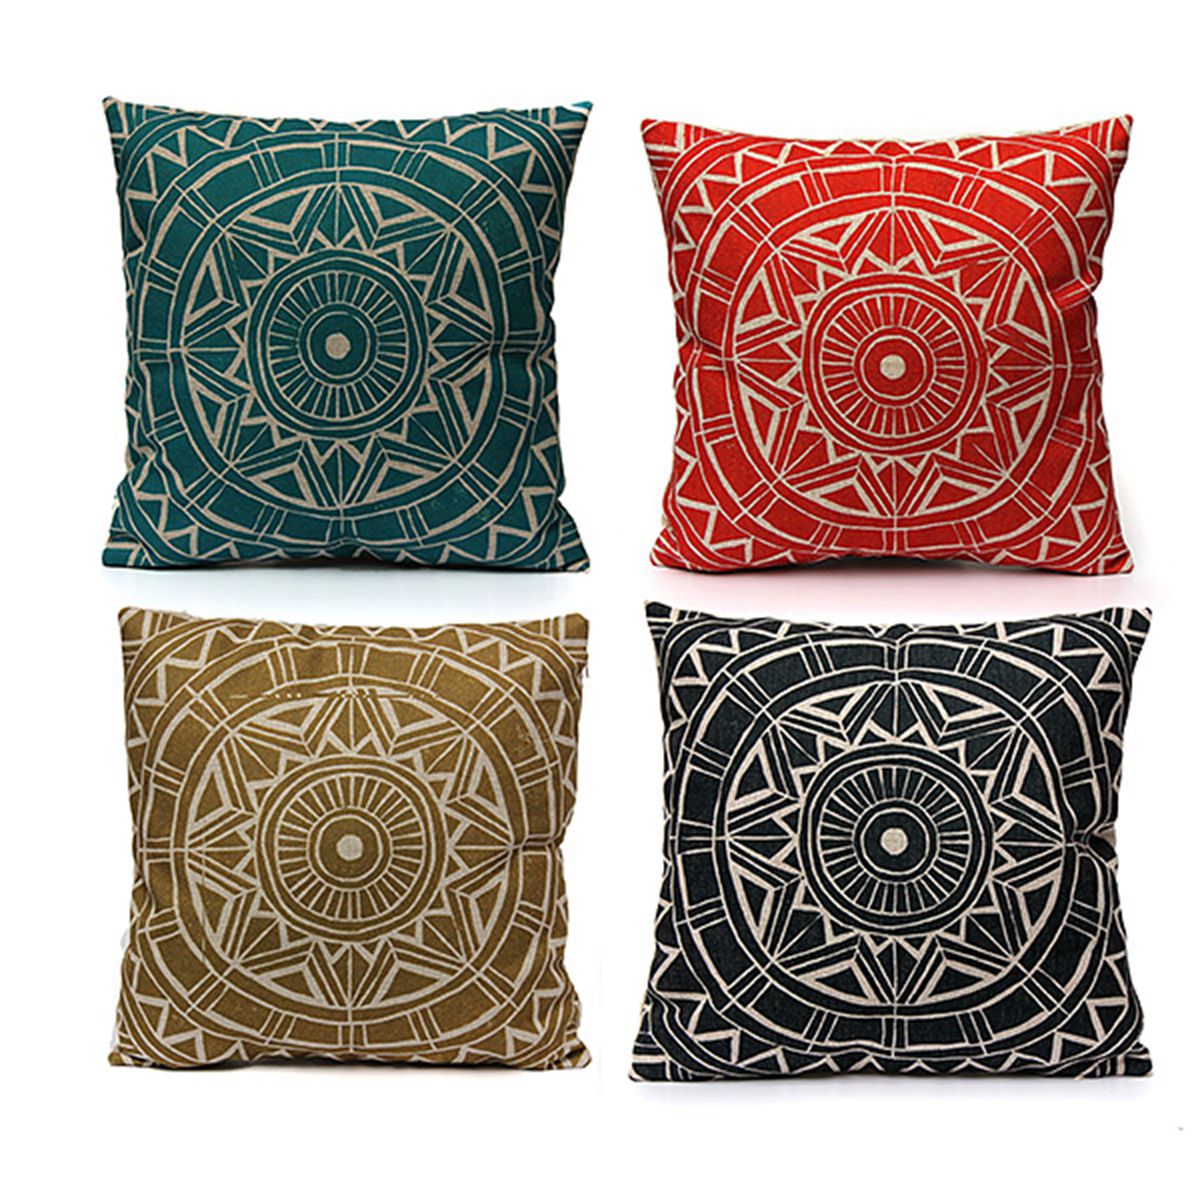 Nordic-style-Decorative-Pillow-Case-Linen-Cotton-Cushion-Cover-Home-Textile-951197-2